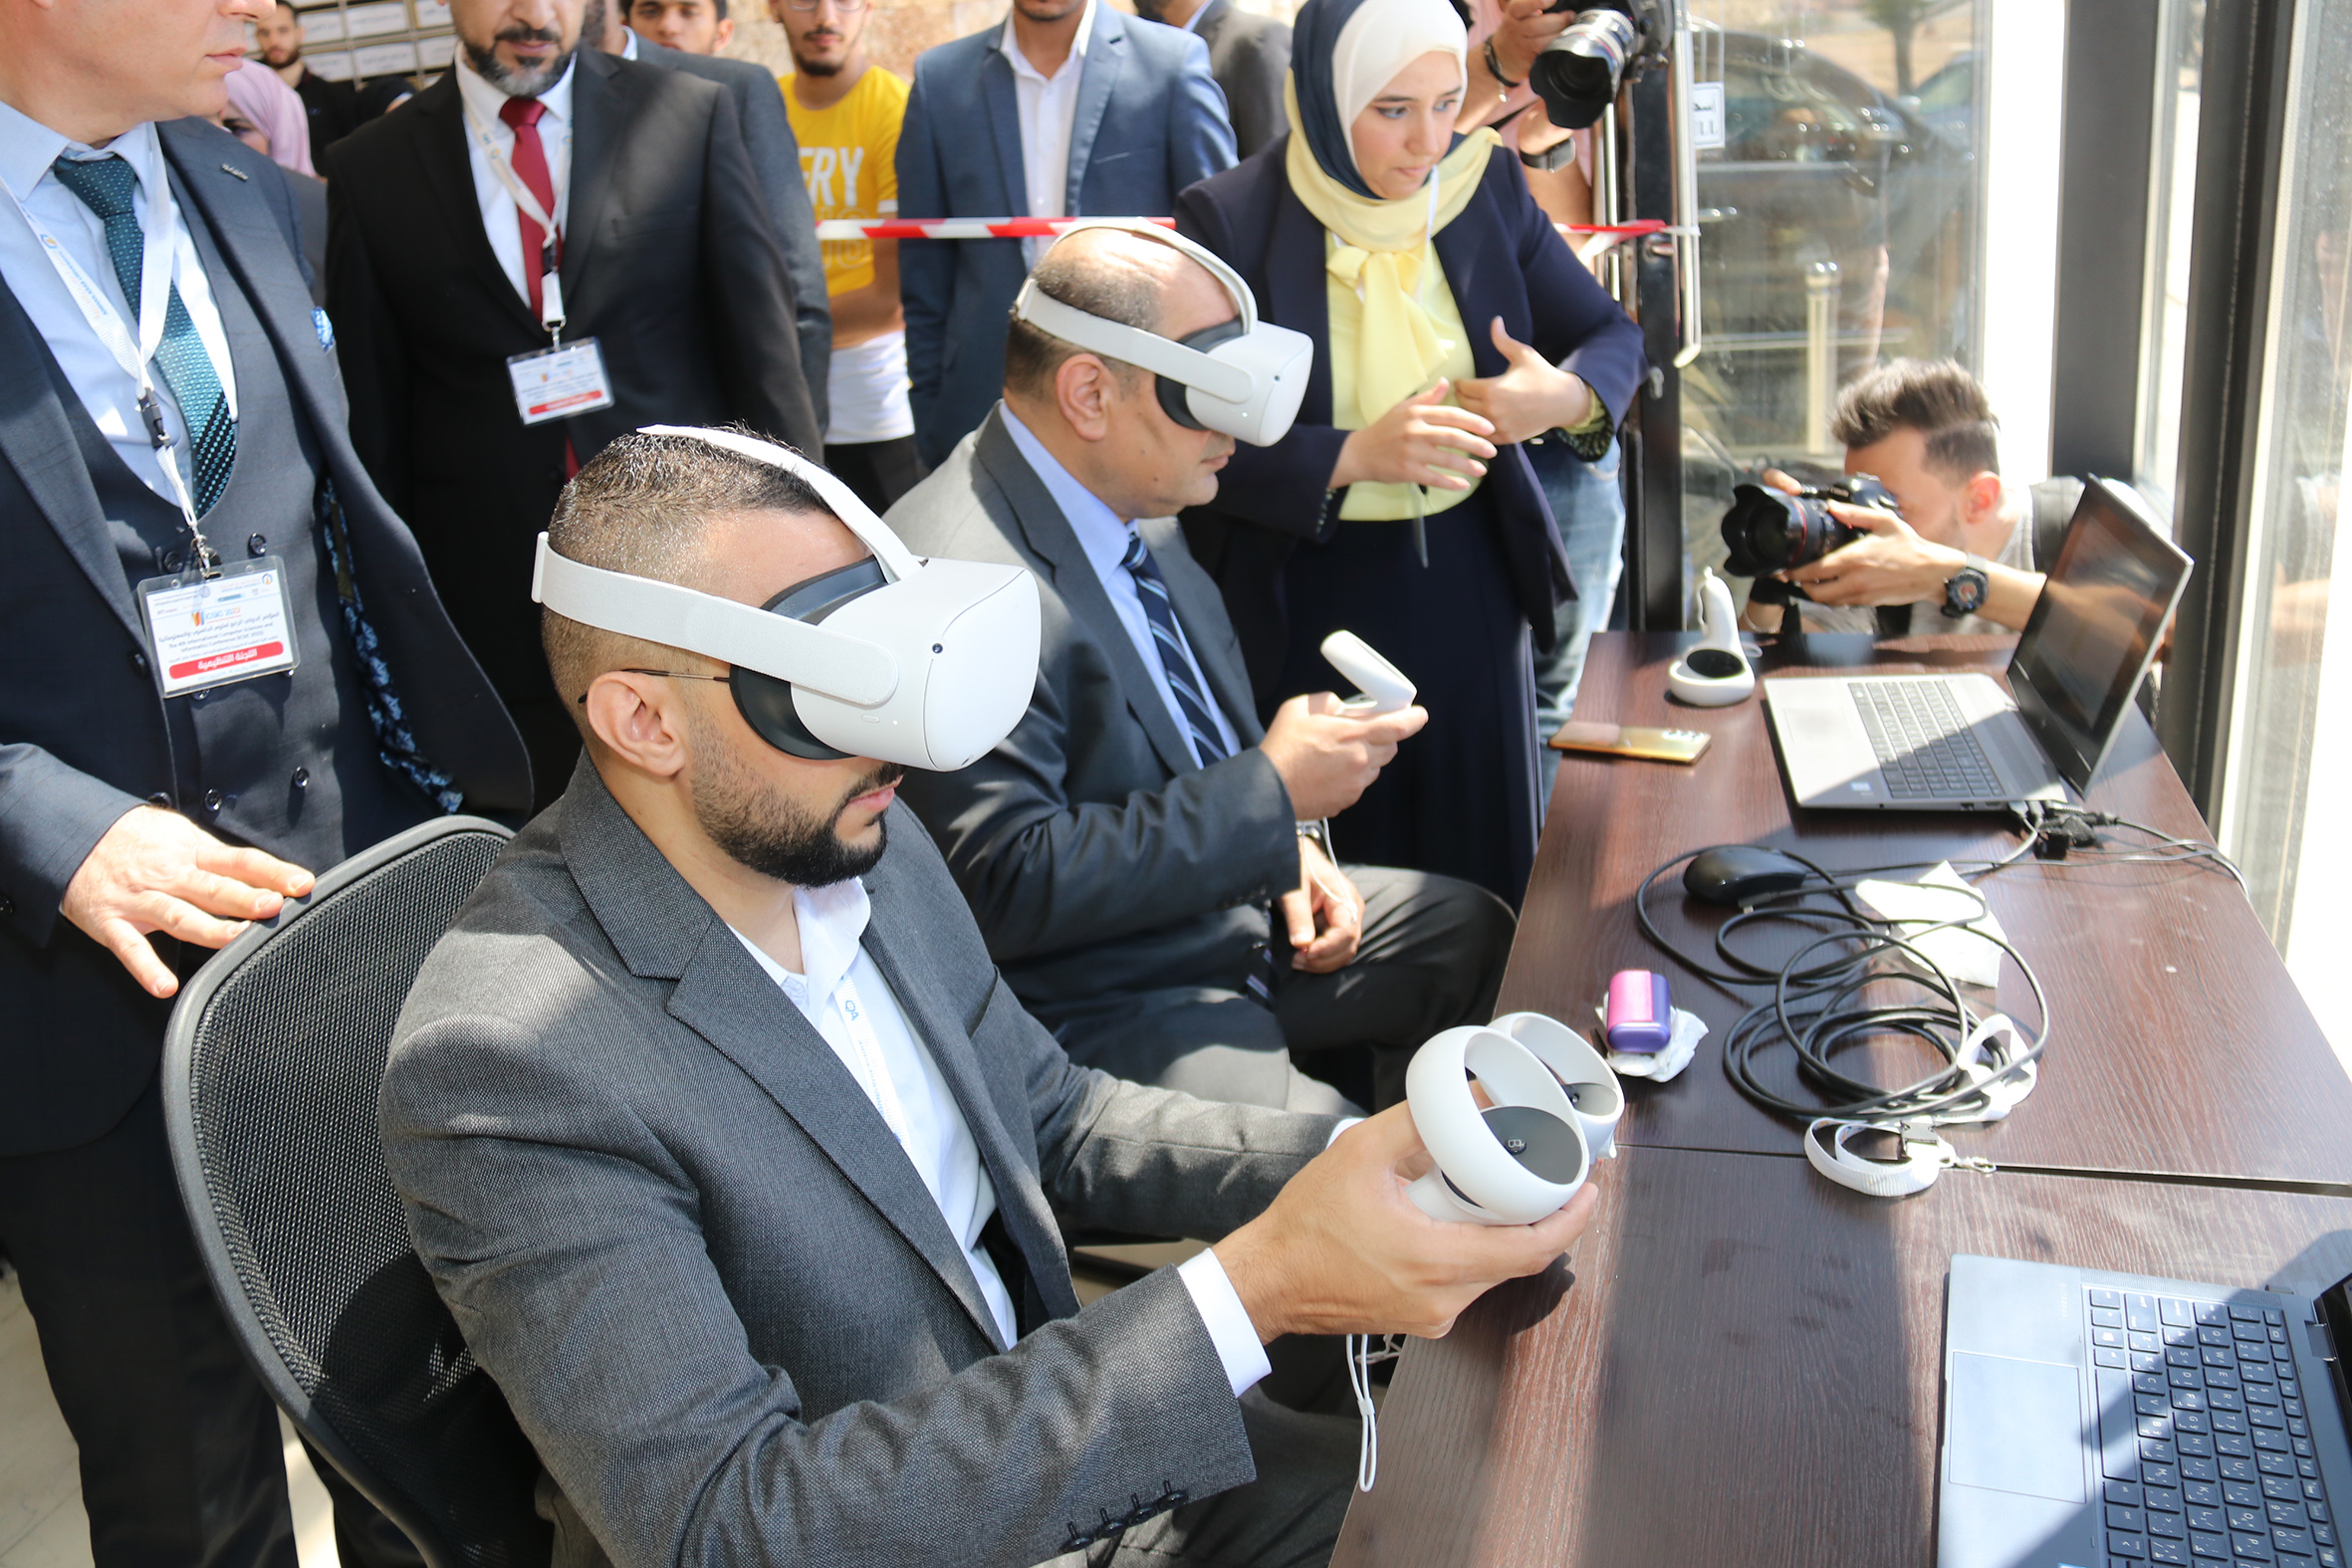 الهناندة يرعى افتتاح فعاليات المؤتمر الدولي الرابع في العلوم الحاسوبية والمعلوماتية في "عمان العربية"17